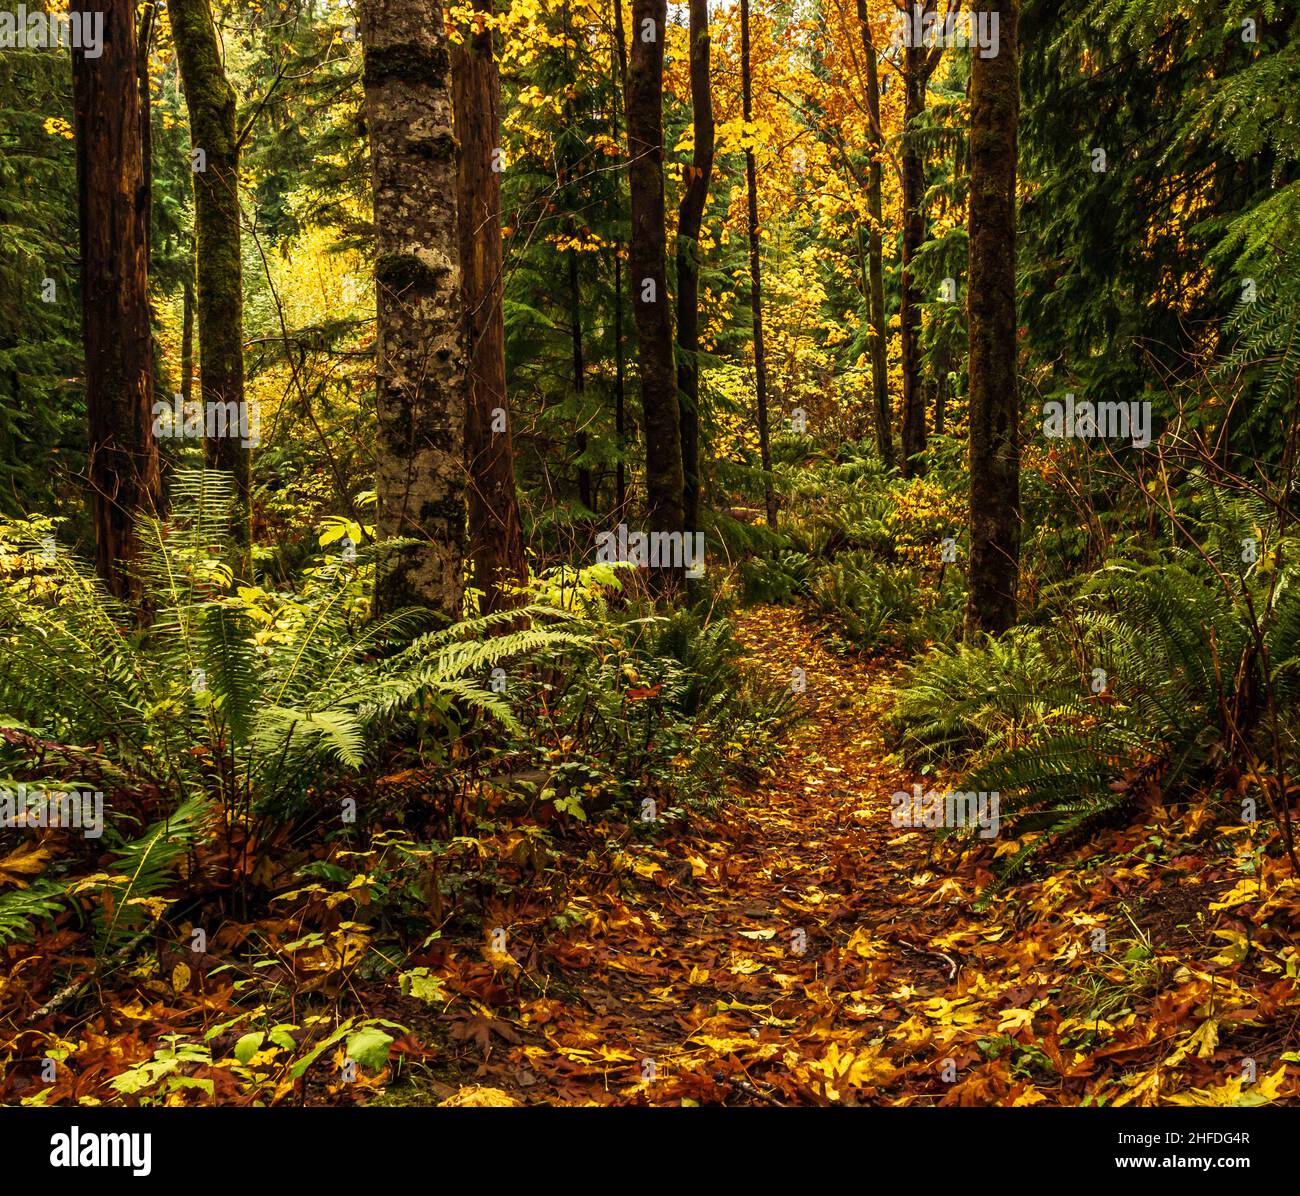 Waldwege durch Parks und Naturschutzgebiete bewahren das Eosystem des Regenwaldes auf Vancouver Island, British Columbia, Kanada. Stockfoto